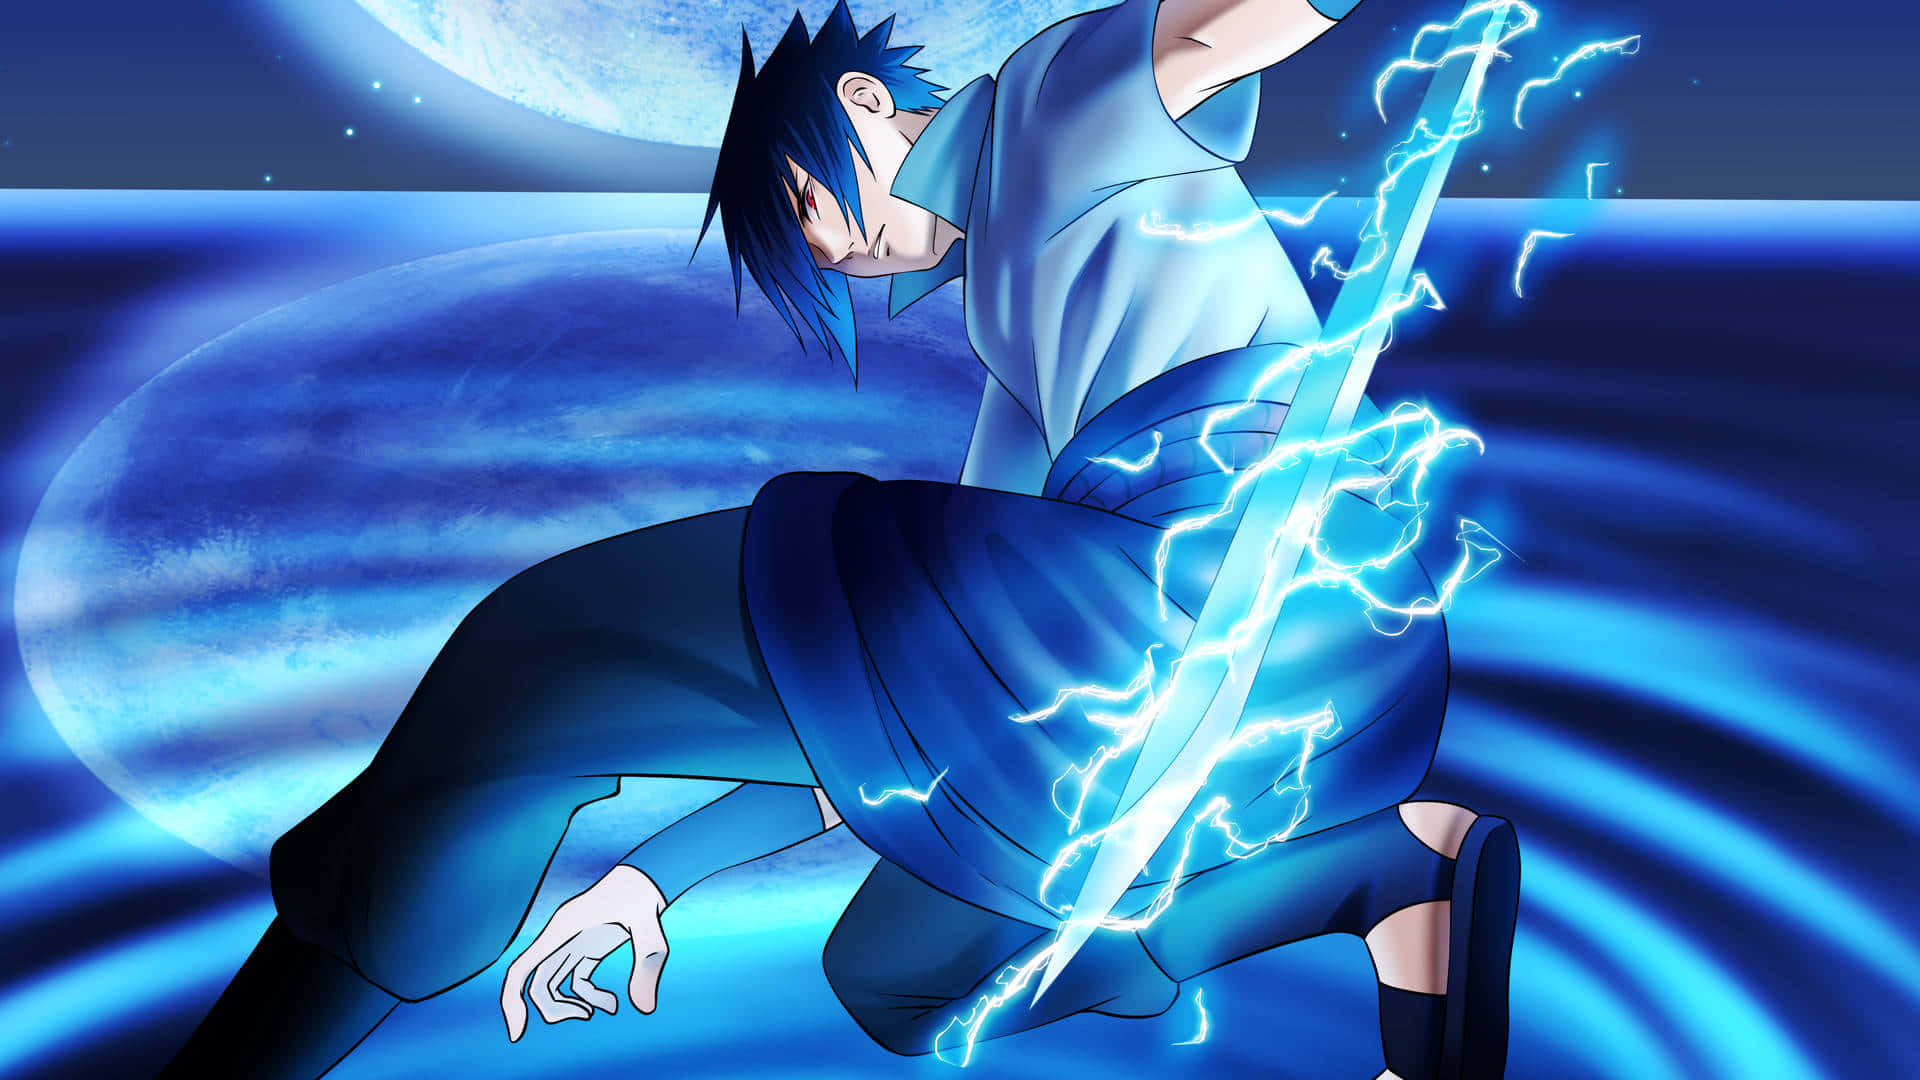 "Sasuke Uchiha, one of the main characters in the manga series Naruto!" Wallpaper